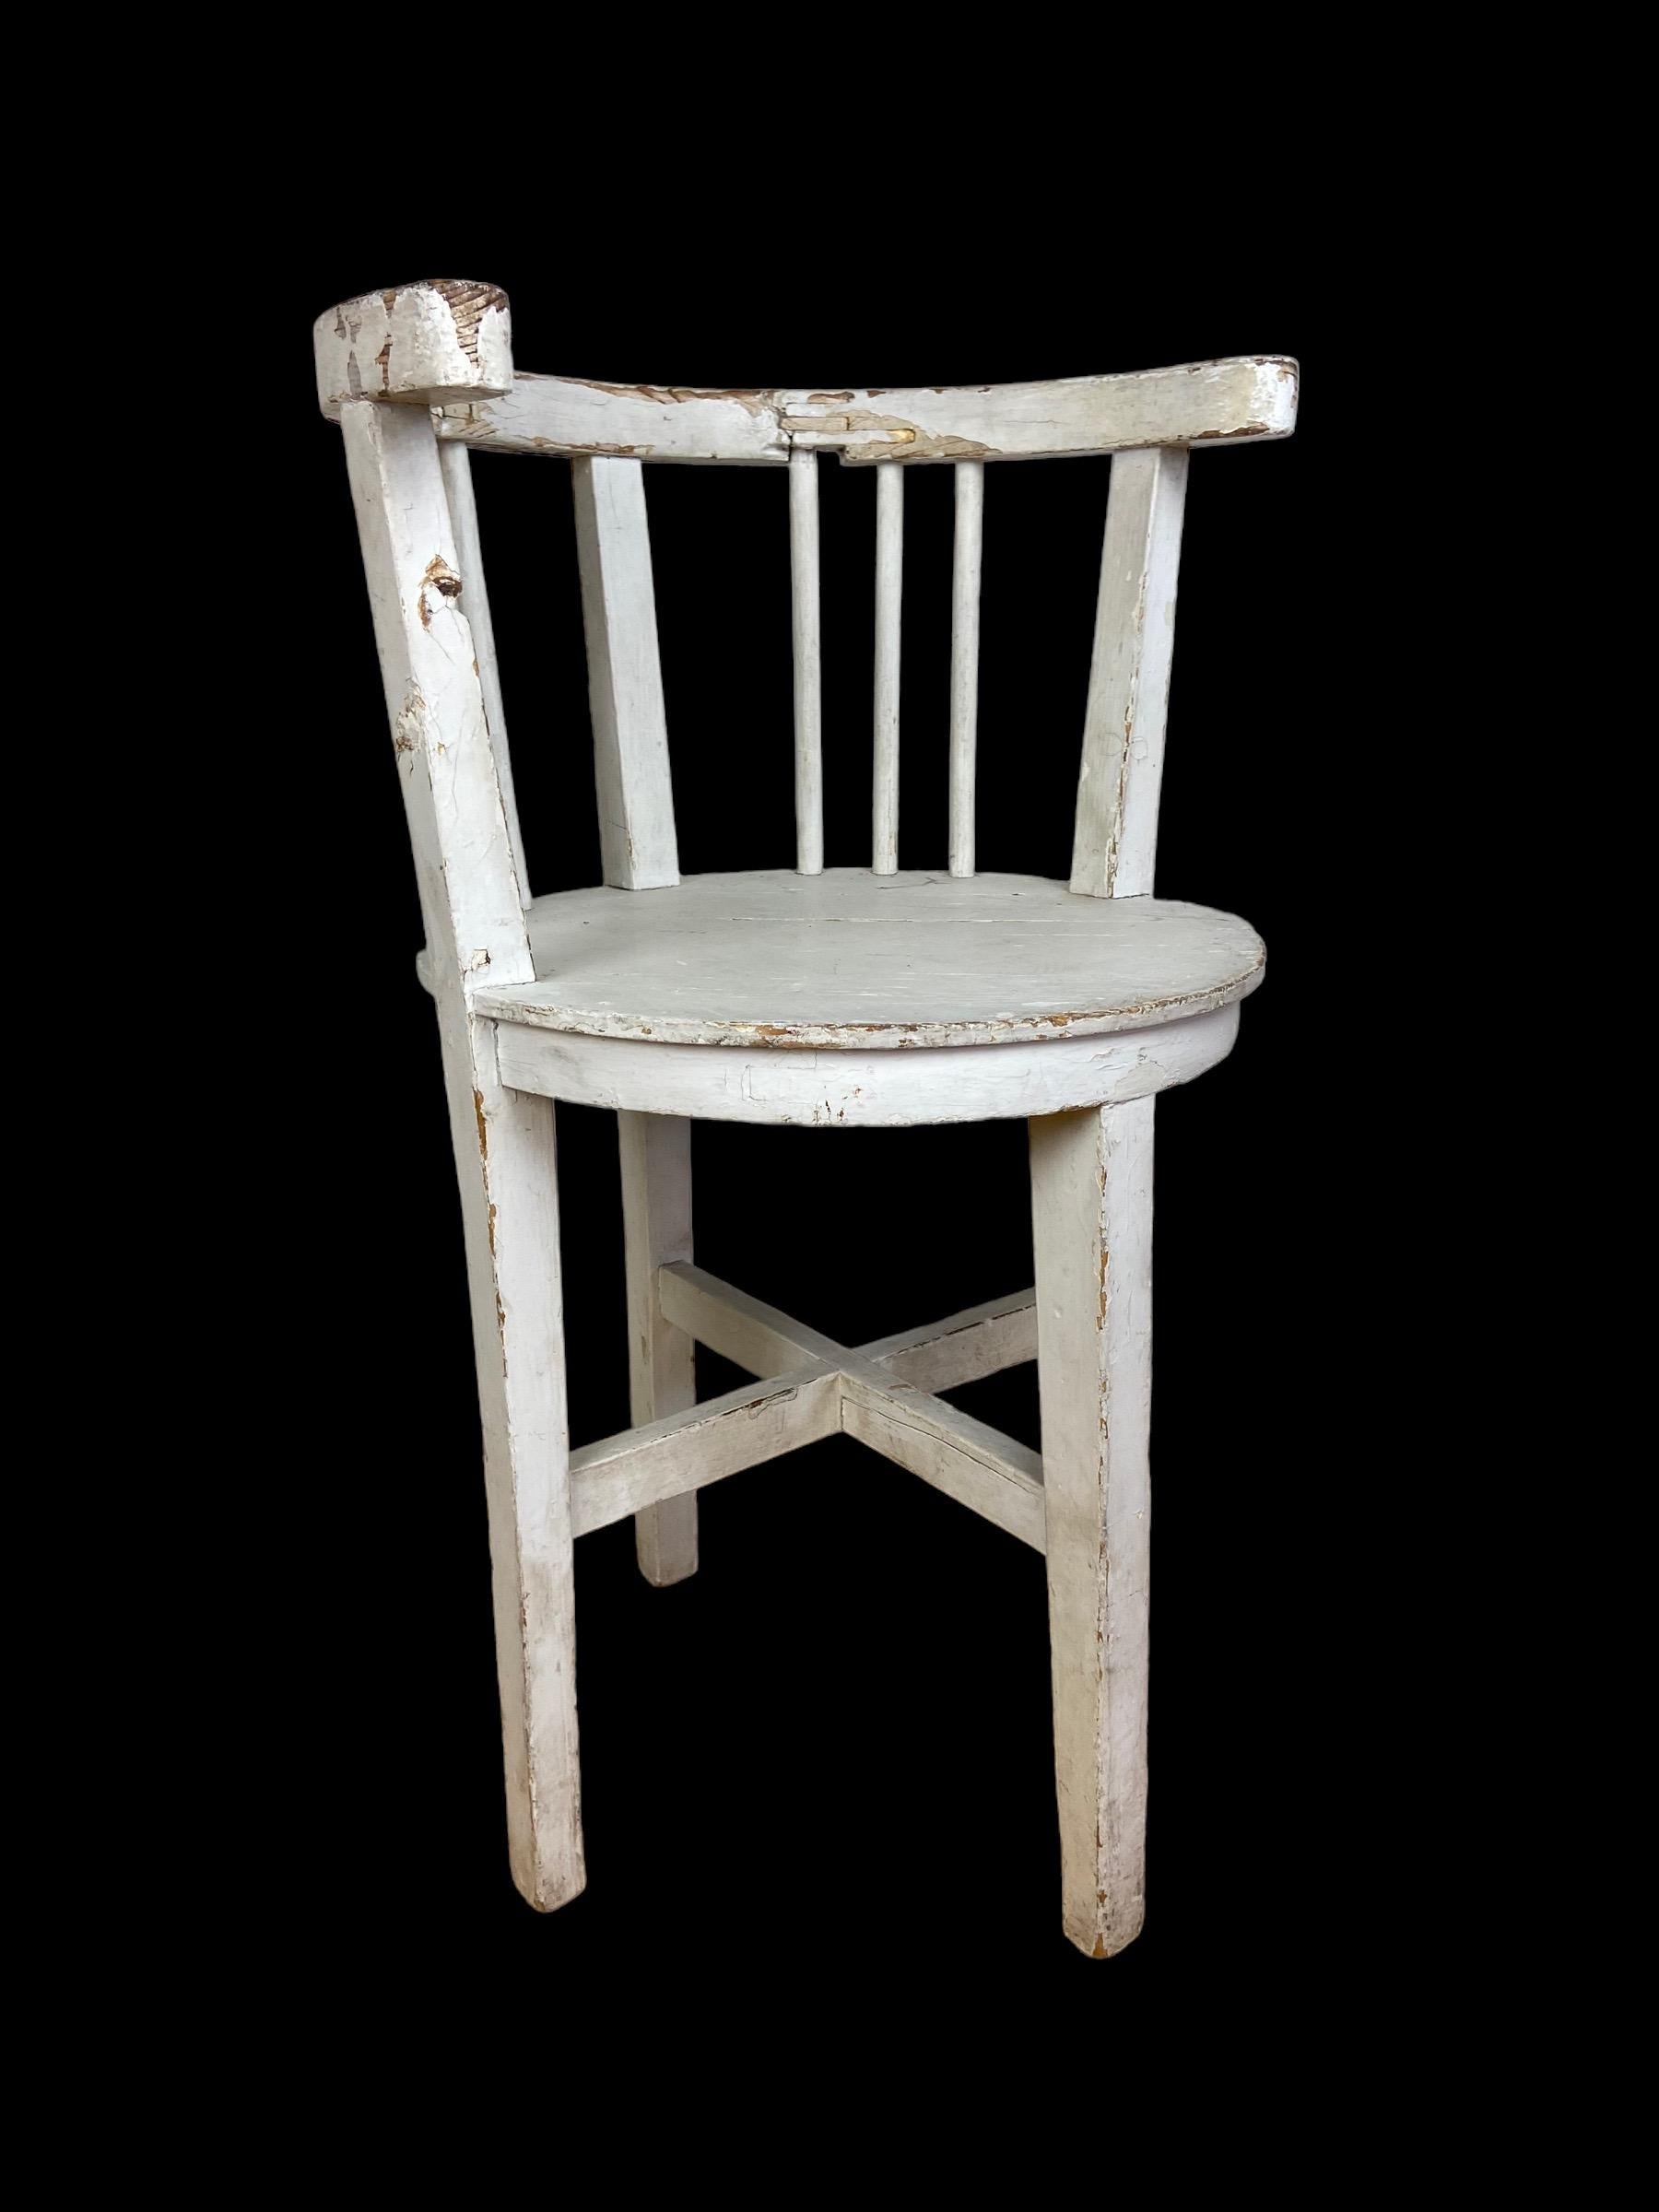 Weißer Art-Déco-Stuhl aus Frankreich. Hergestellt in den 1930er Jahren.

Sitzhöhe 49 cm Höhe 77 cm Durchmesser 43 cm.